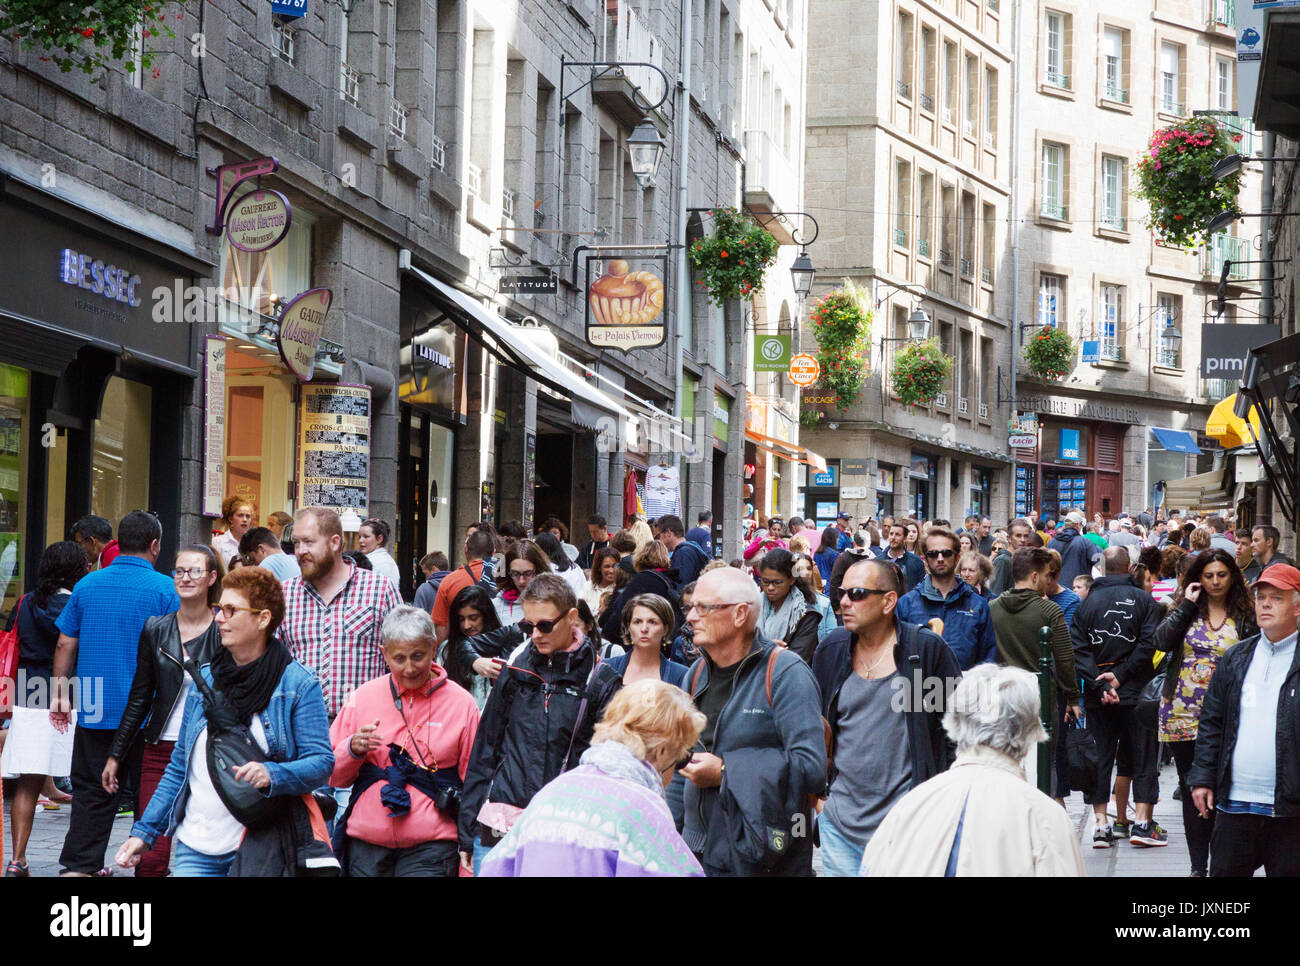 St Malo, Bretagna Francia - una folla di gente che su una strada trafficata in Old Town ( città murata ), St Malo Bretagna Francia Foto Stock